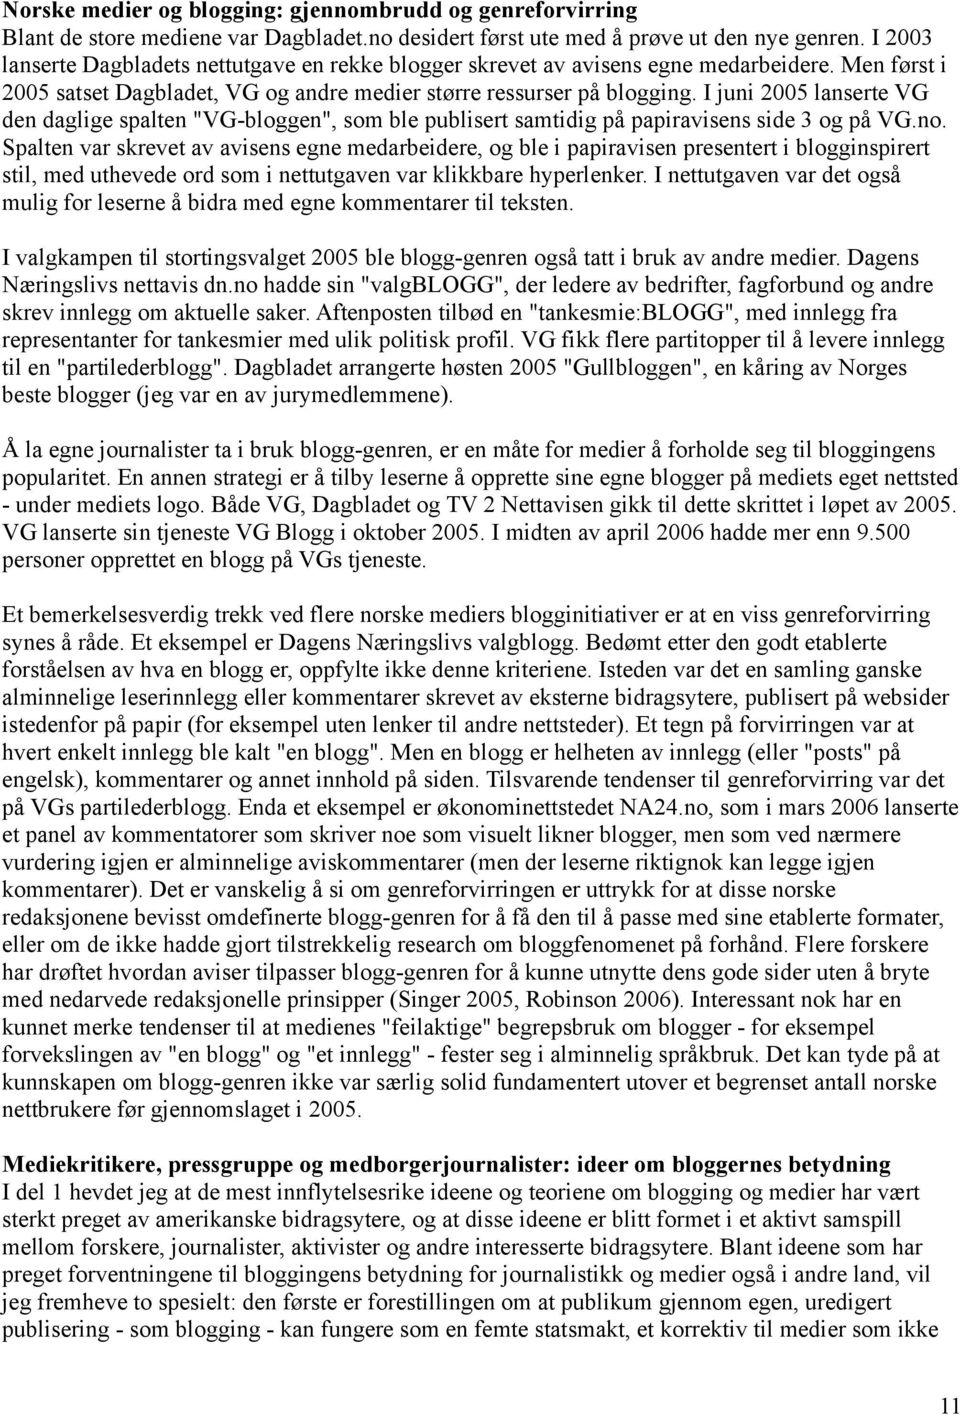 I juni 2005 lanserte VG den daglige spalten "VG-bloggen", som ble publisert samtidig på papiravisens side 3 og på VG.no.